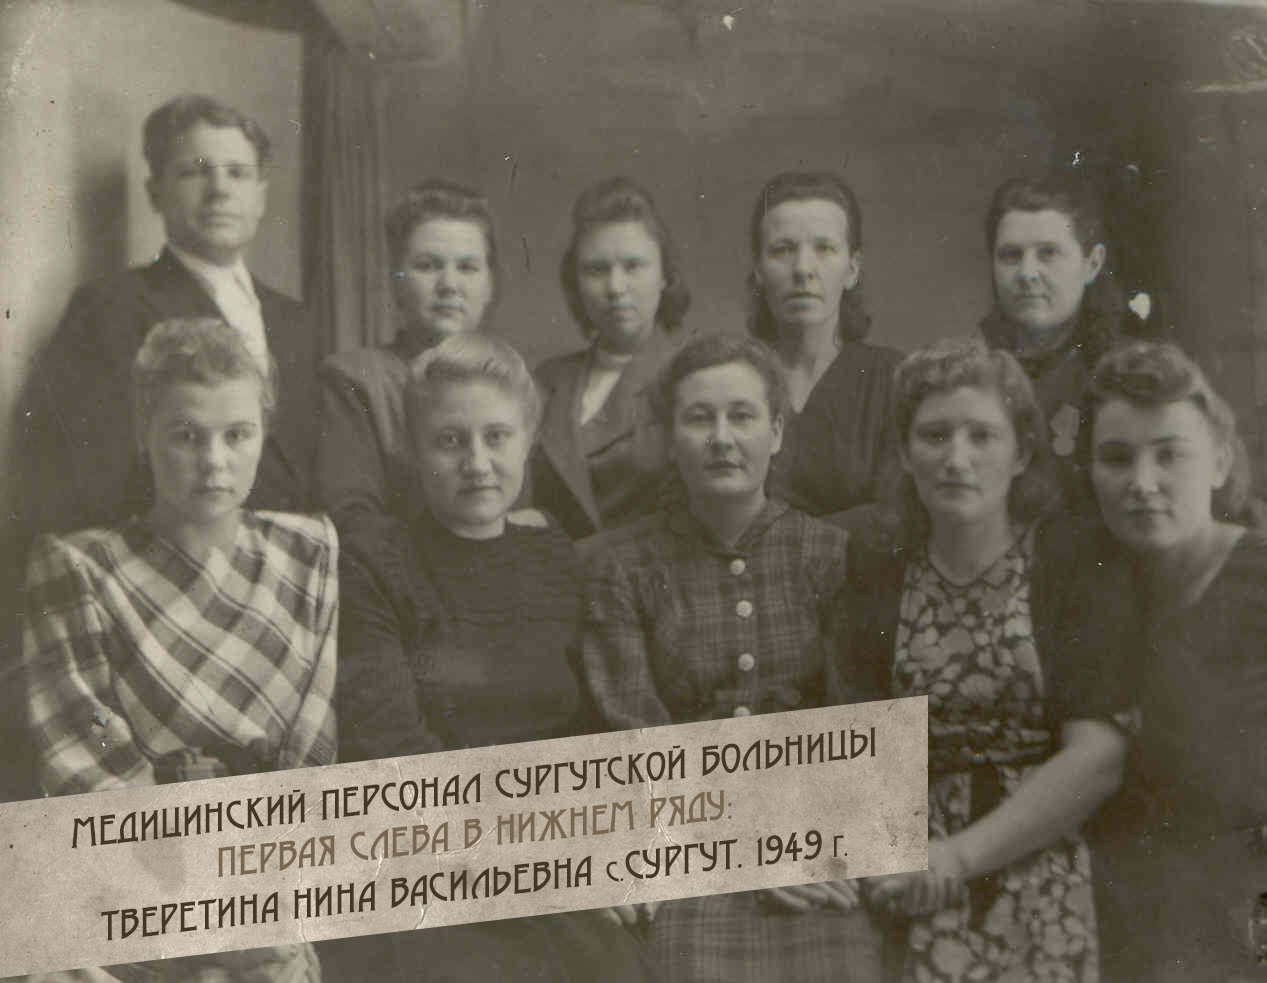 2-Meditsinskiy-personal-Surgutskoy-bolnitsyi.-pervaya-sleva-v-nizhnem-ryadu-Tveretina-Nina-Vasilevna-s.Surgut.-1949-g.